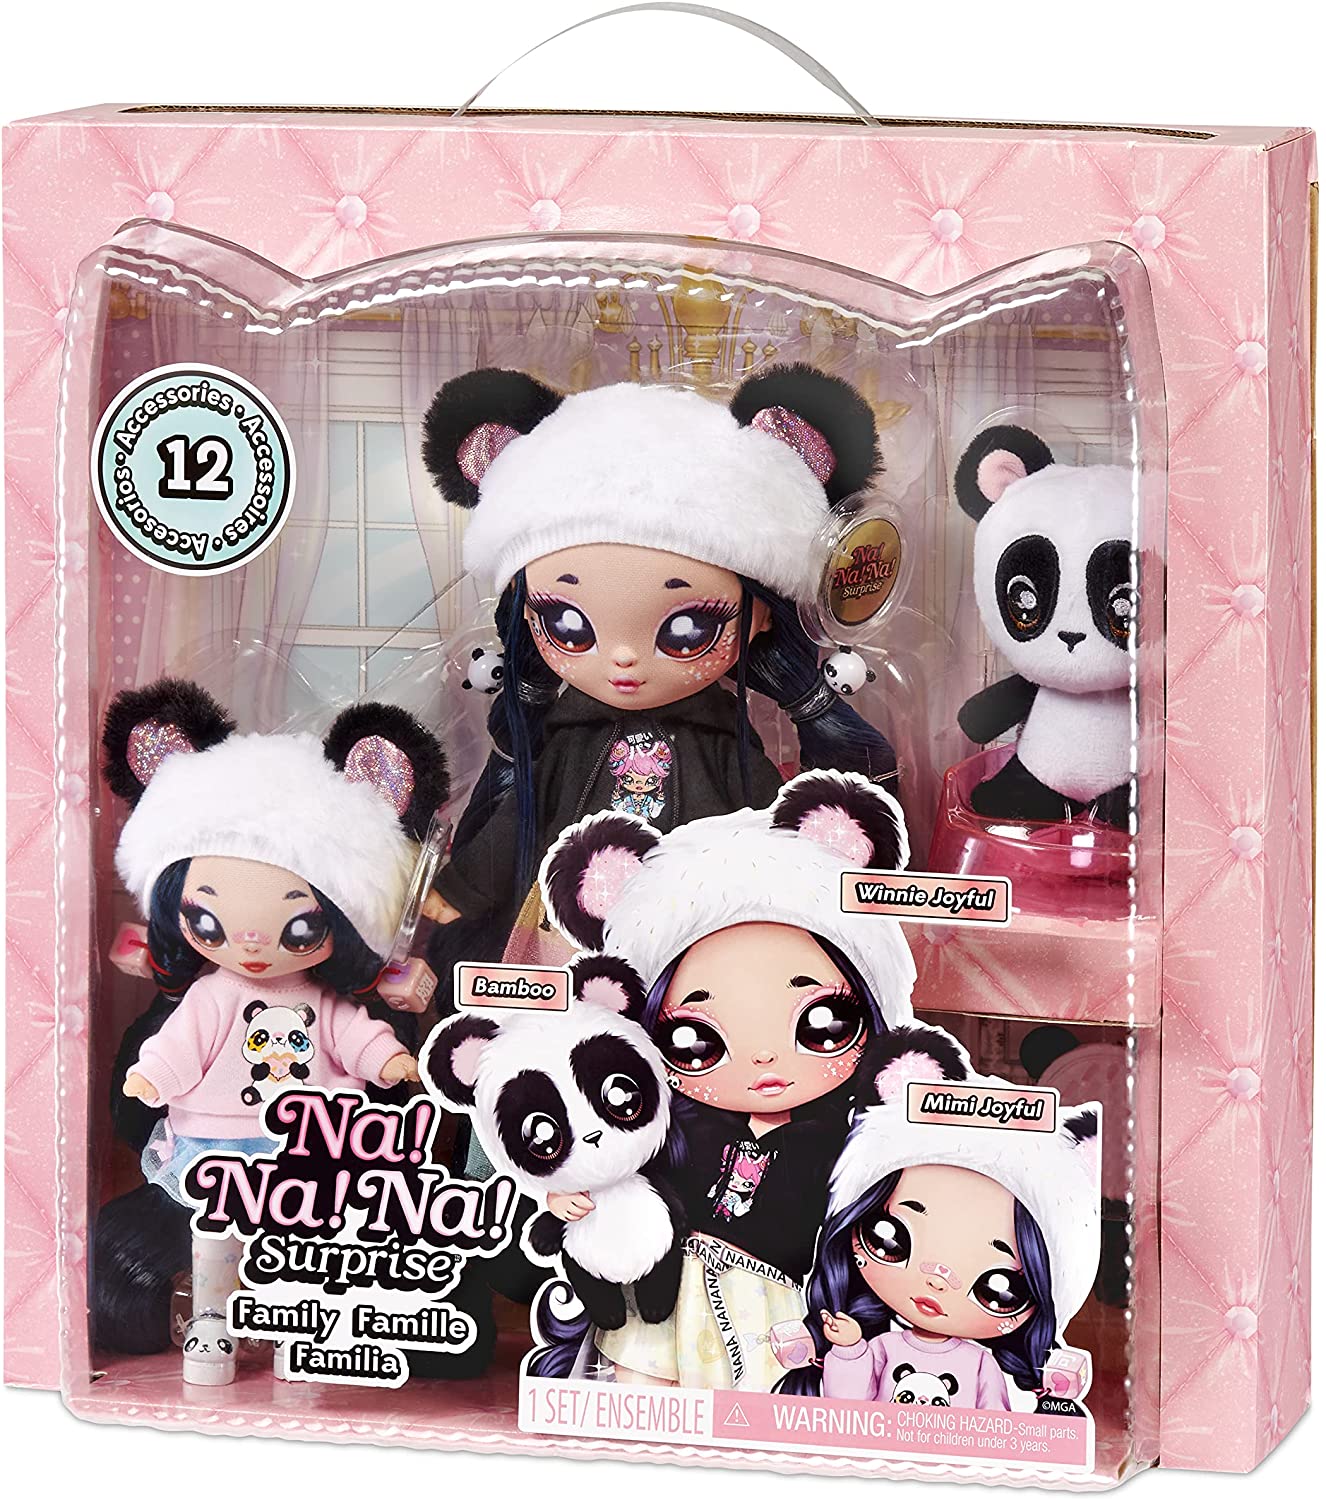 Moletom Panda  Como Fazer Roupa da Barbie e outras Bonecas